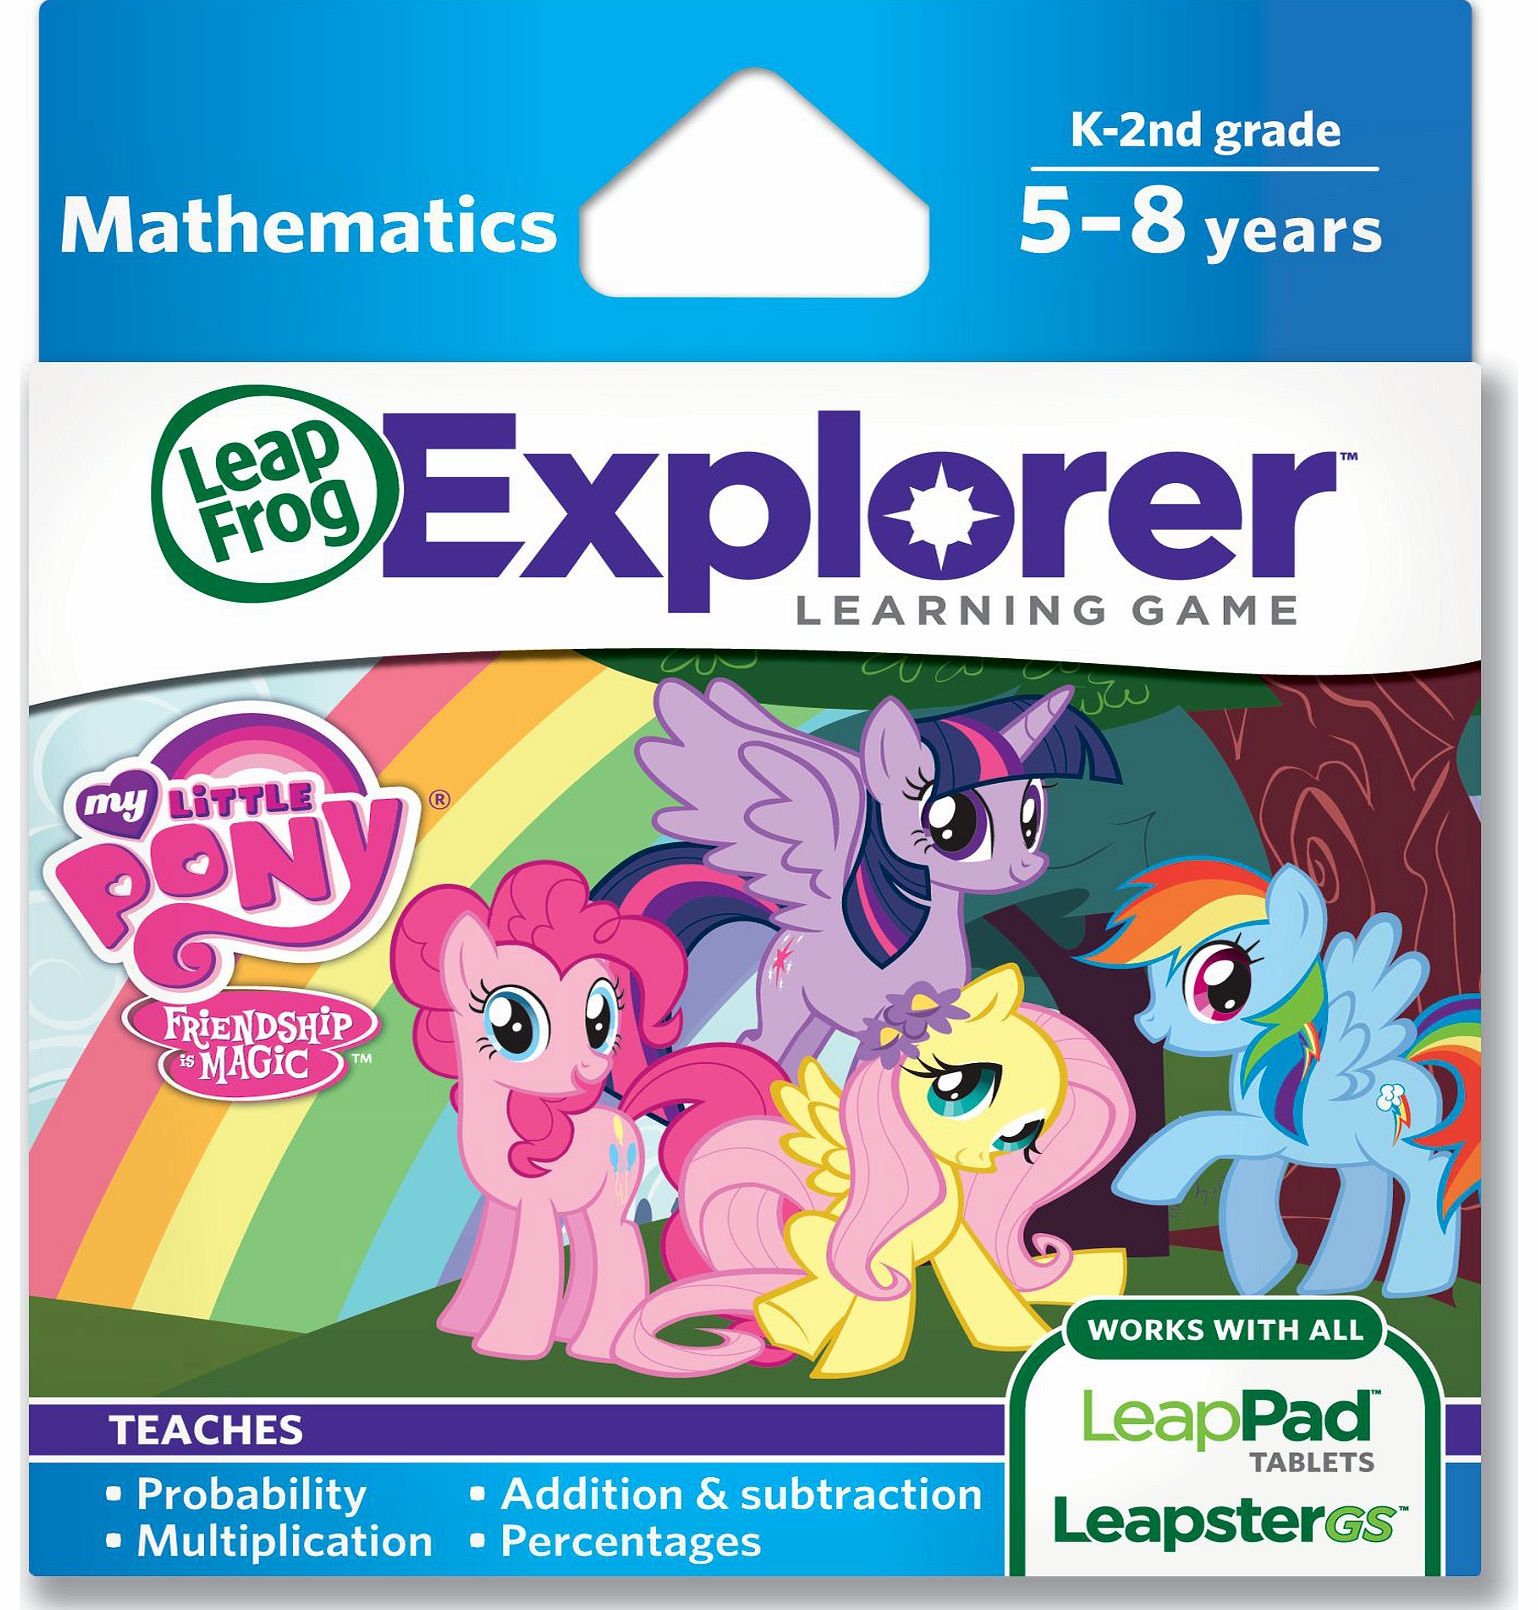 LeapFrog Explorer Learning Game - My Little Pony